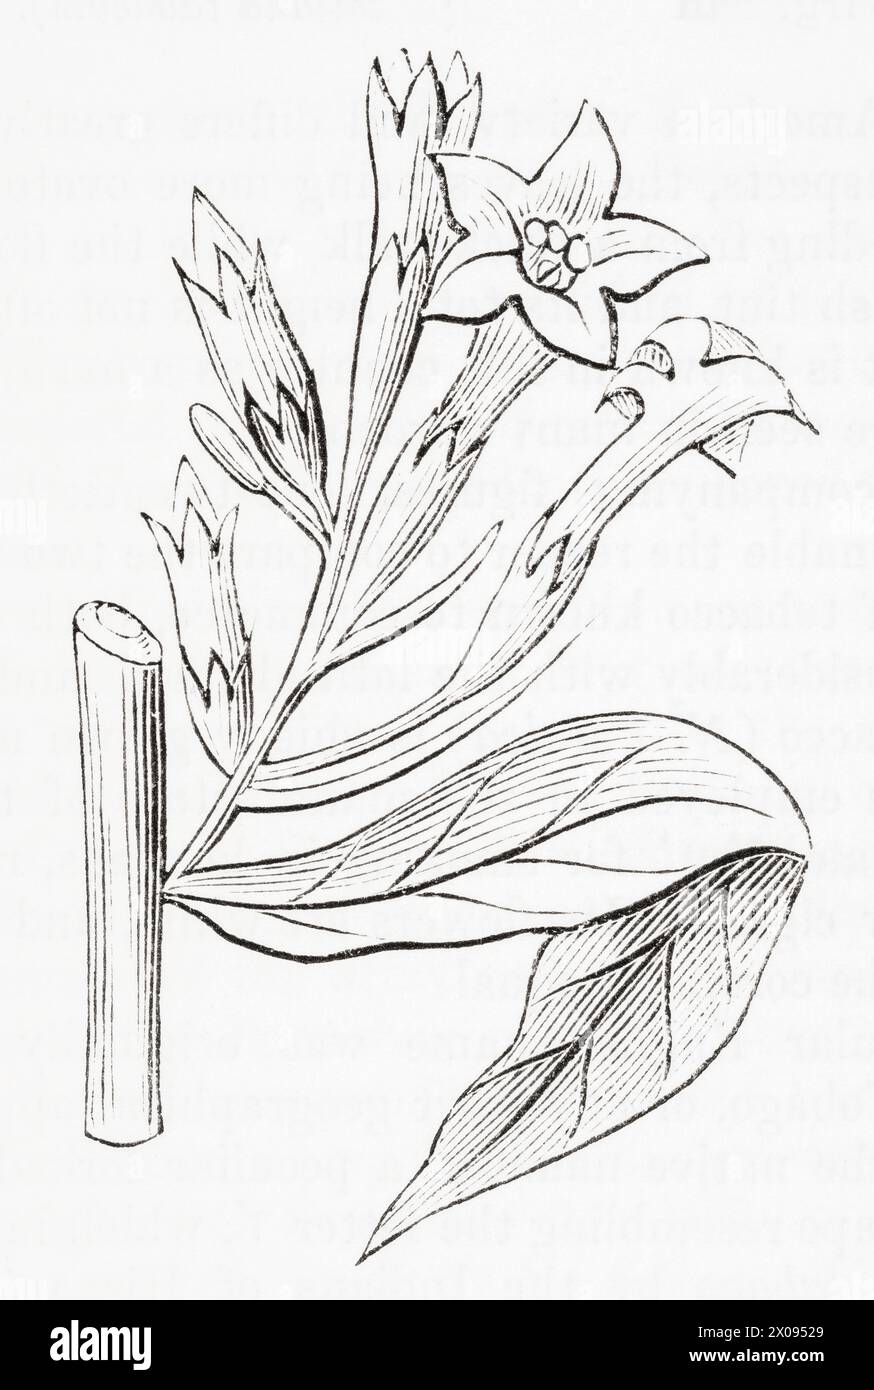 Années 1870, XIXe siècle gravure botanique / illustration de plante de tabac persane (Nicotiana persica) - utilisé comme plante médicinale. Voir Remarques. Banque D'Images